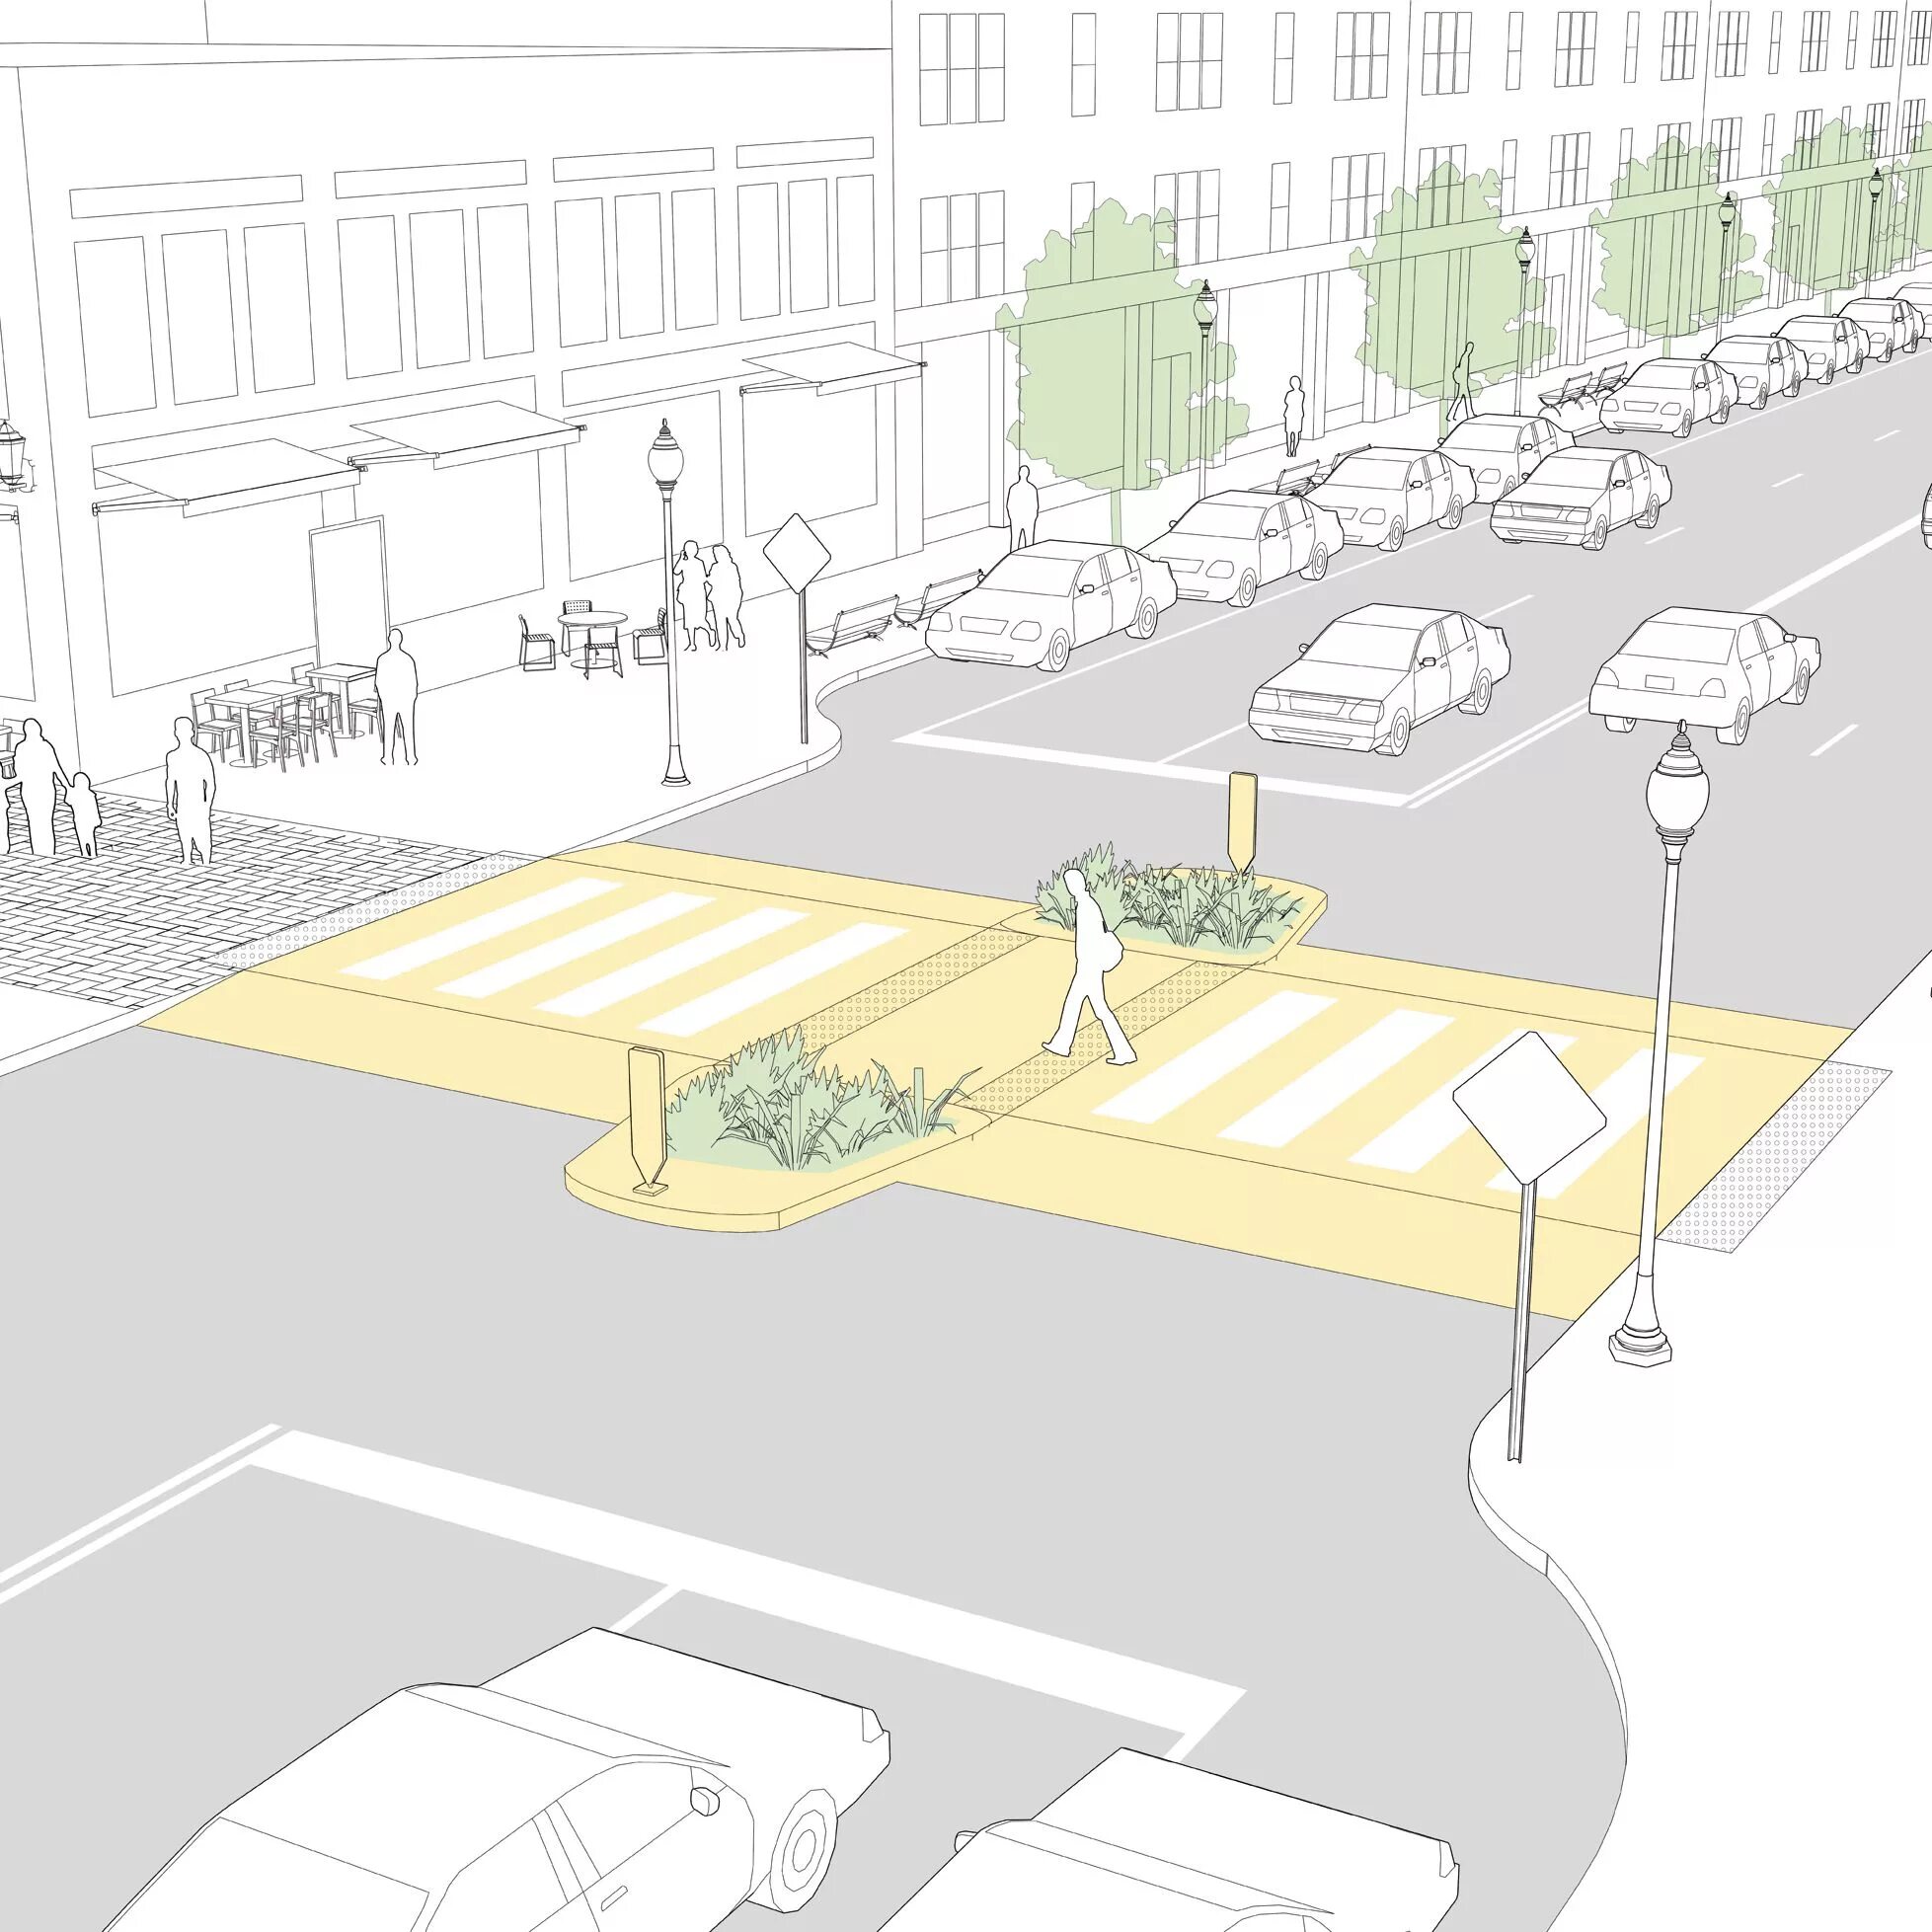 Пешеходные зоны в жилой зоне. Проектирование пешеходных дорожек. Благоустройство проезжей части. Освещение пешеходных дорожек. Проект пешеходного перехода.